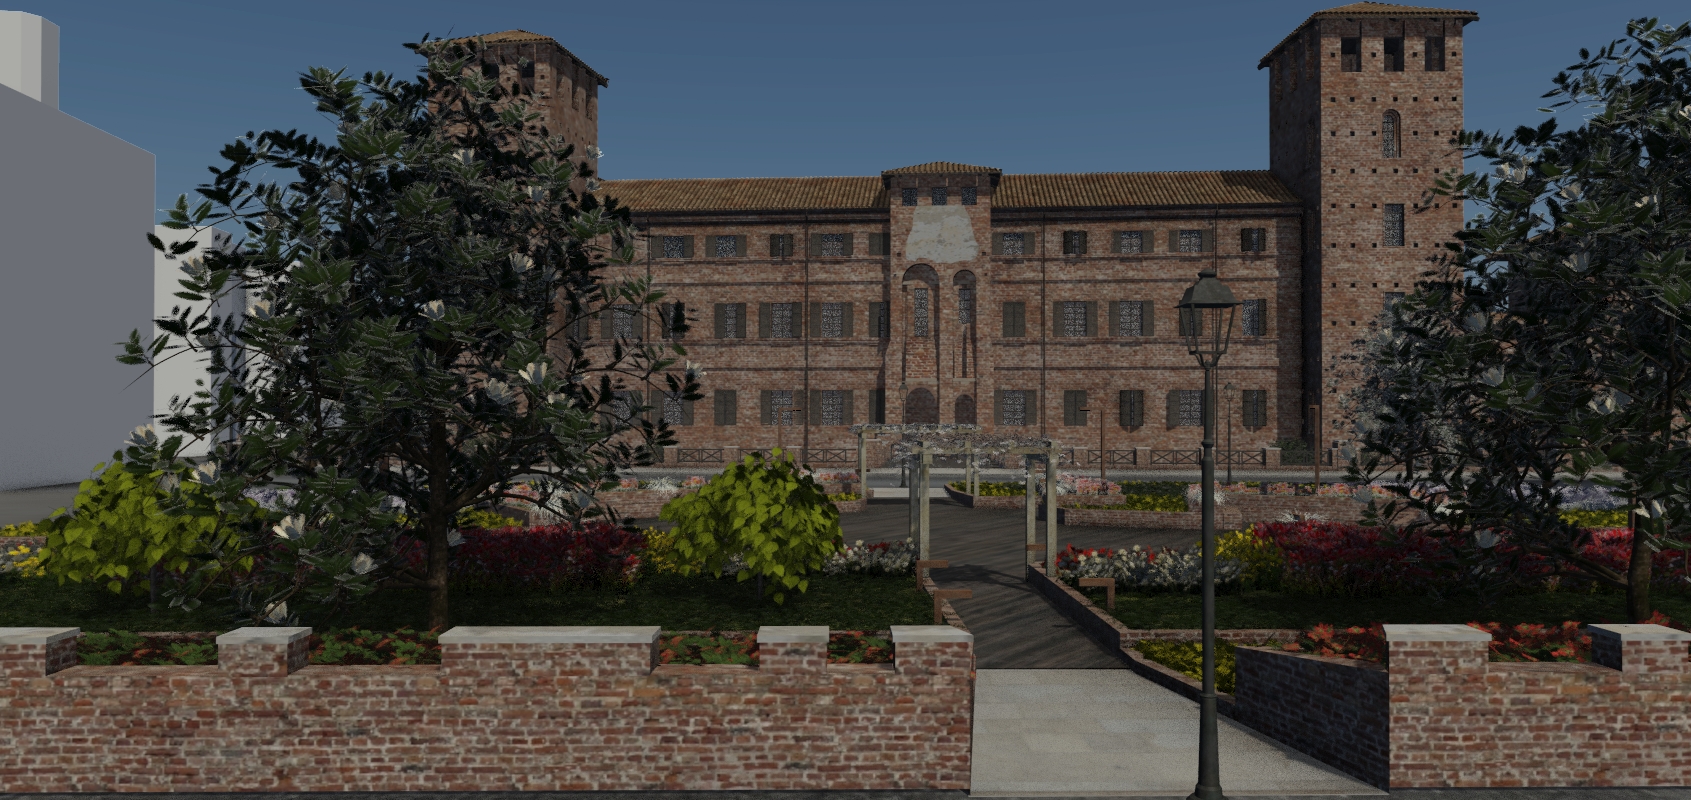 Permalink to: Vercelli – Castello – Simulazione diurna